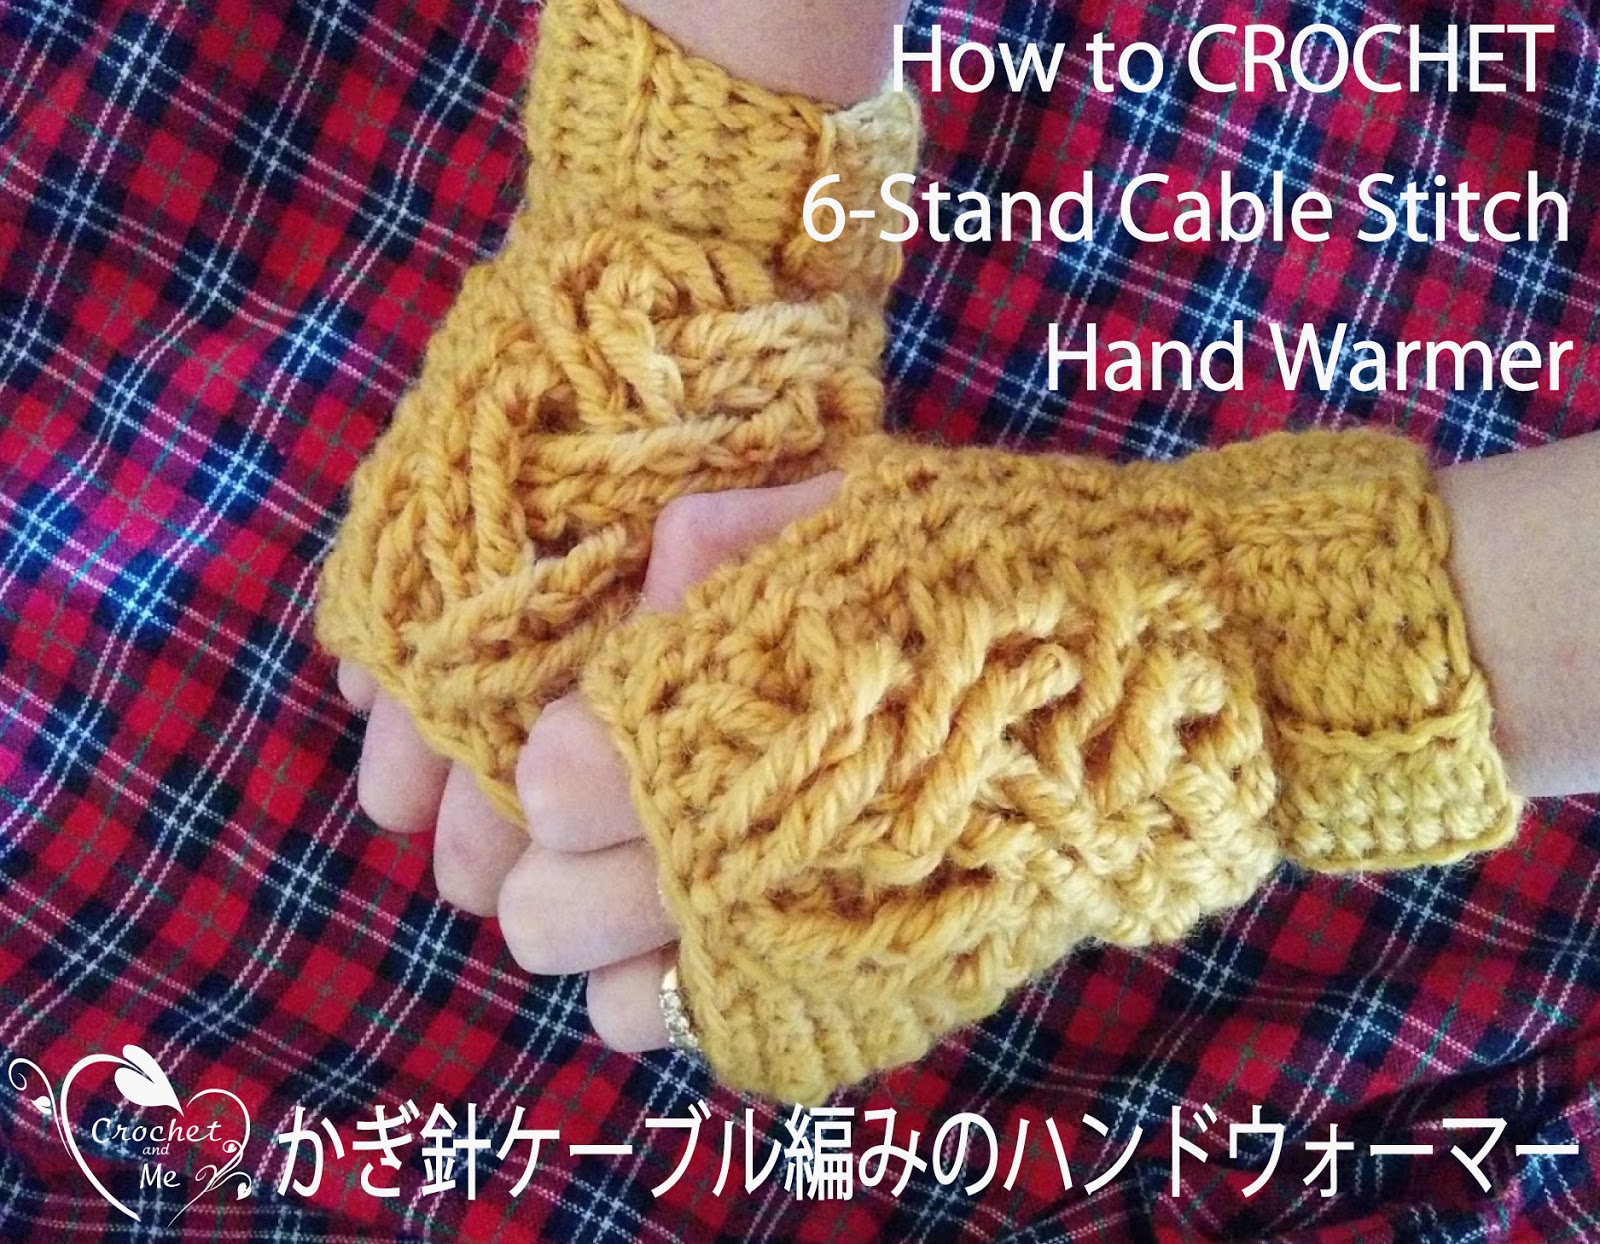 ケーブル編みのハンドウォーマーの編み方-Crochet and Me かぎ針編みの 